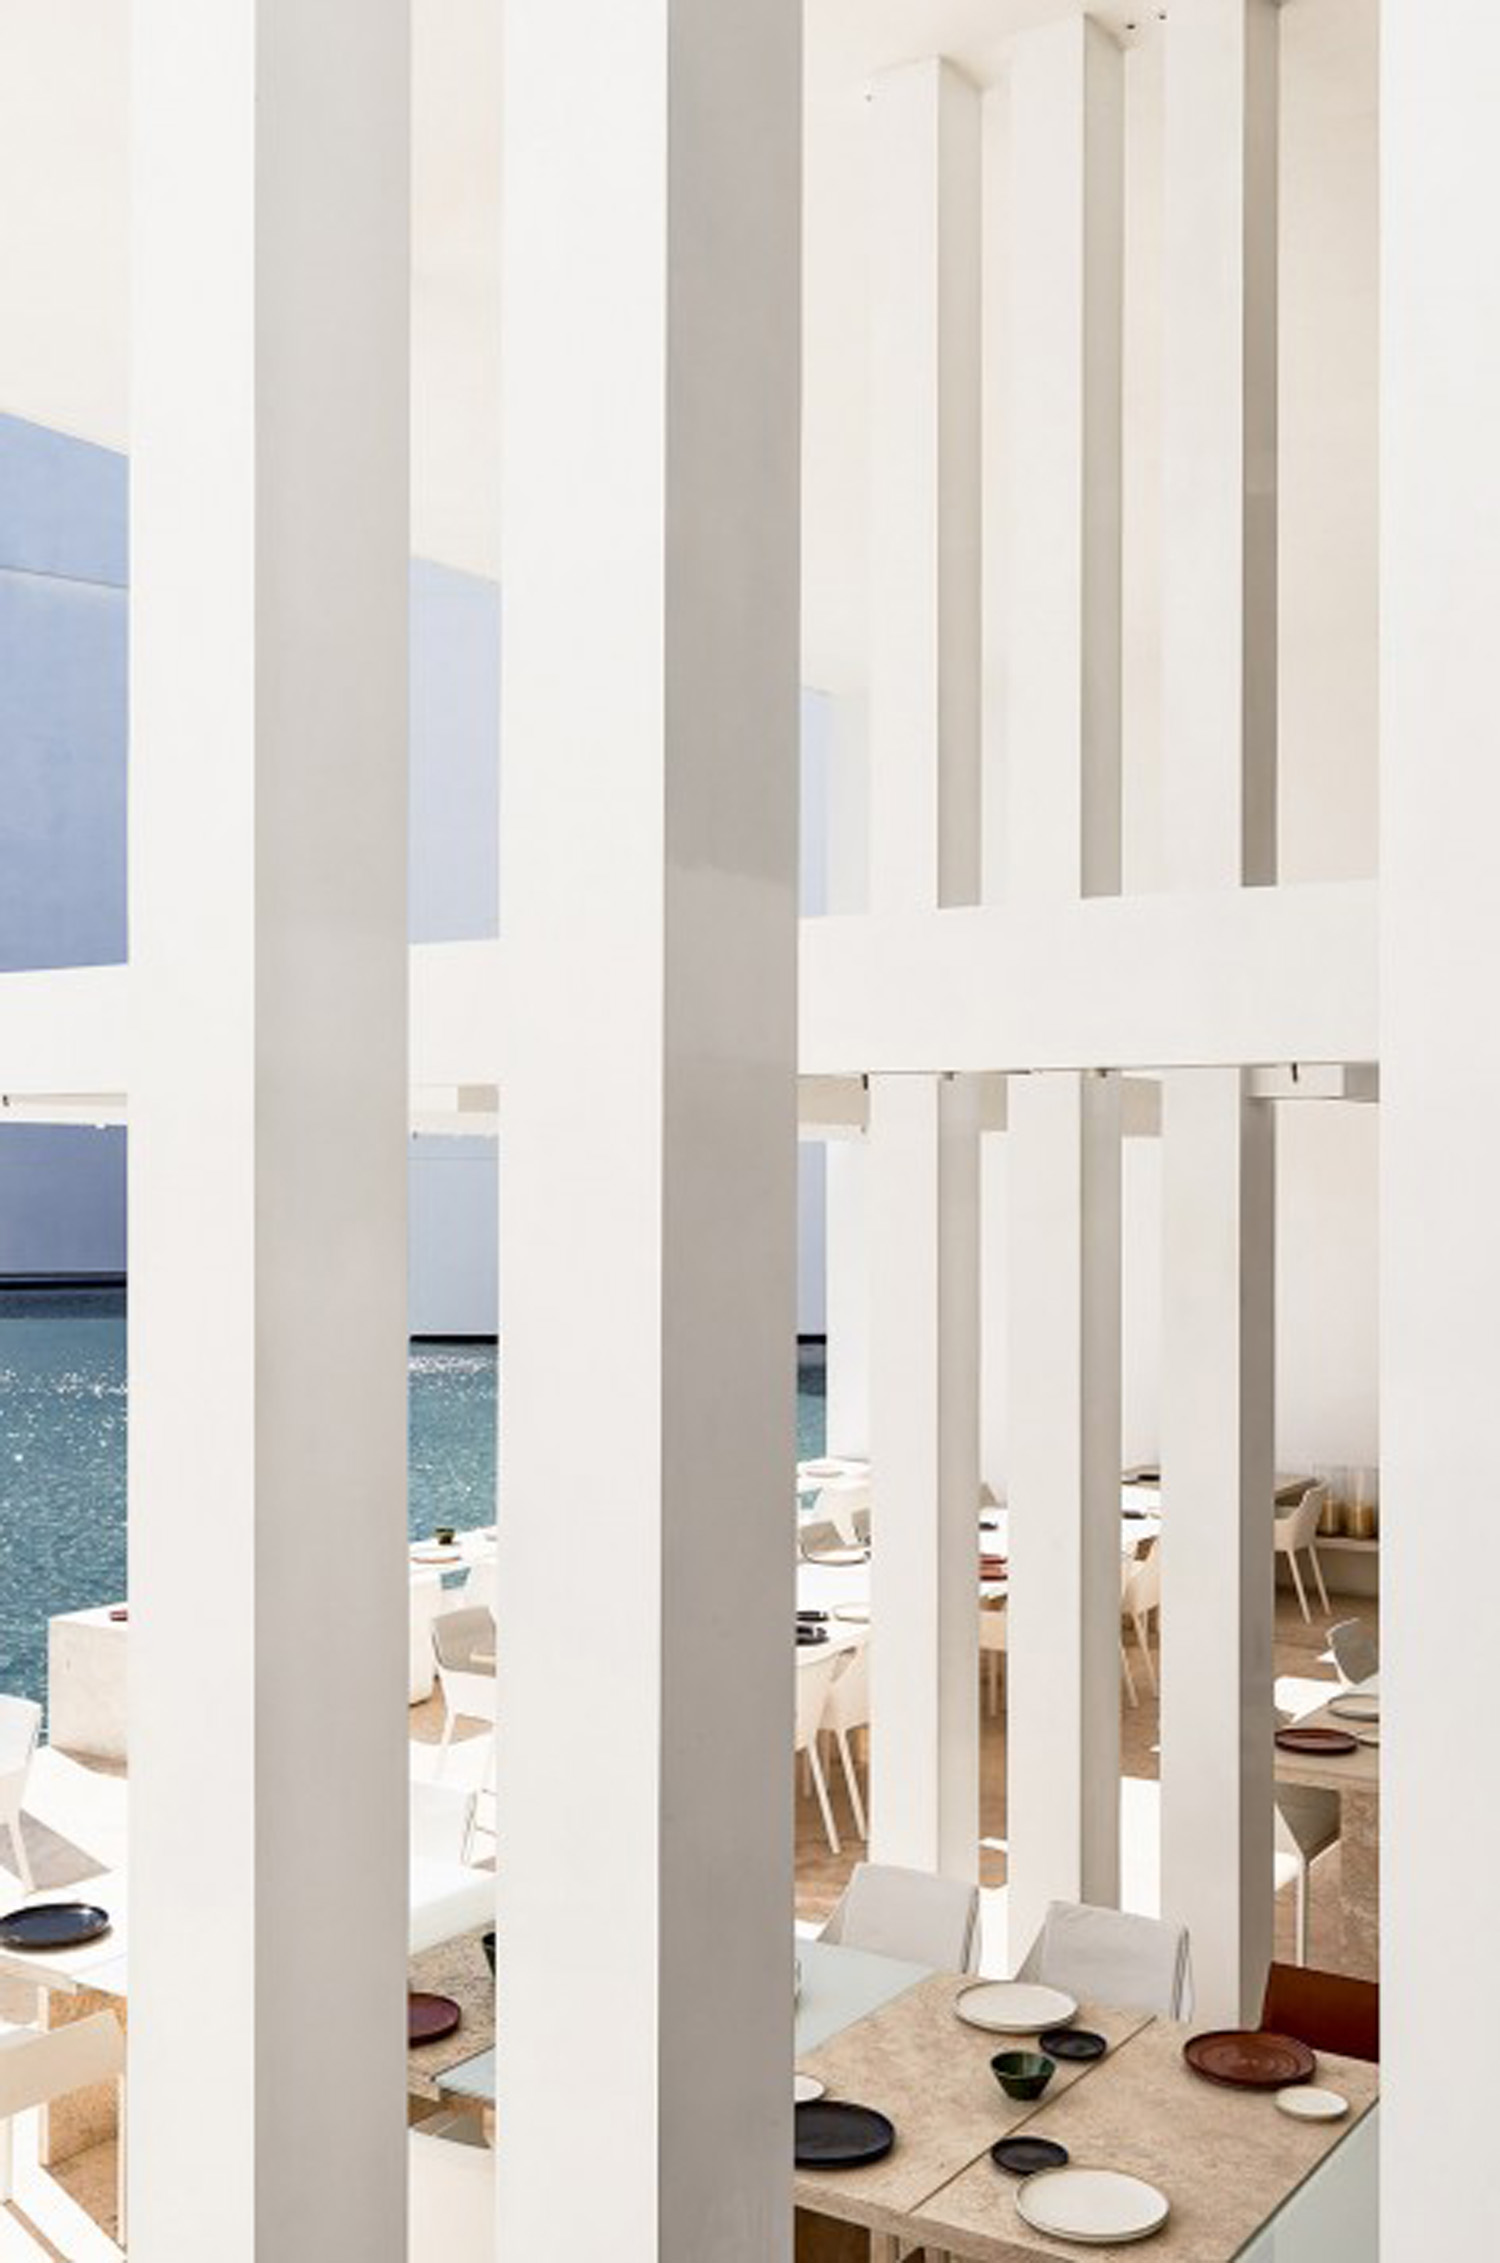 Design of outdoor dining area in Resort Hotel